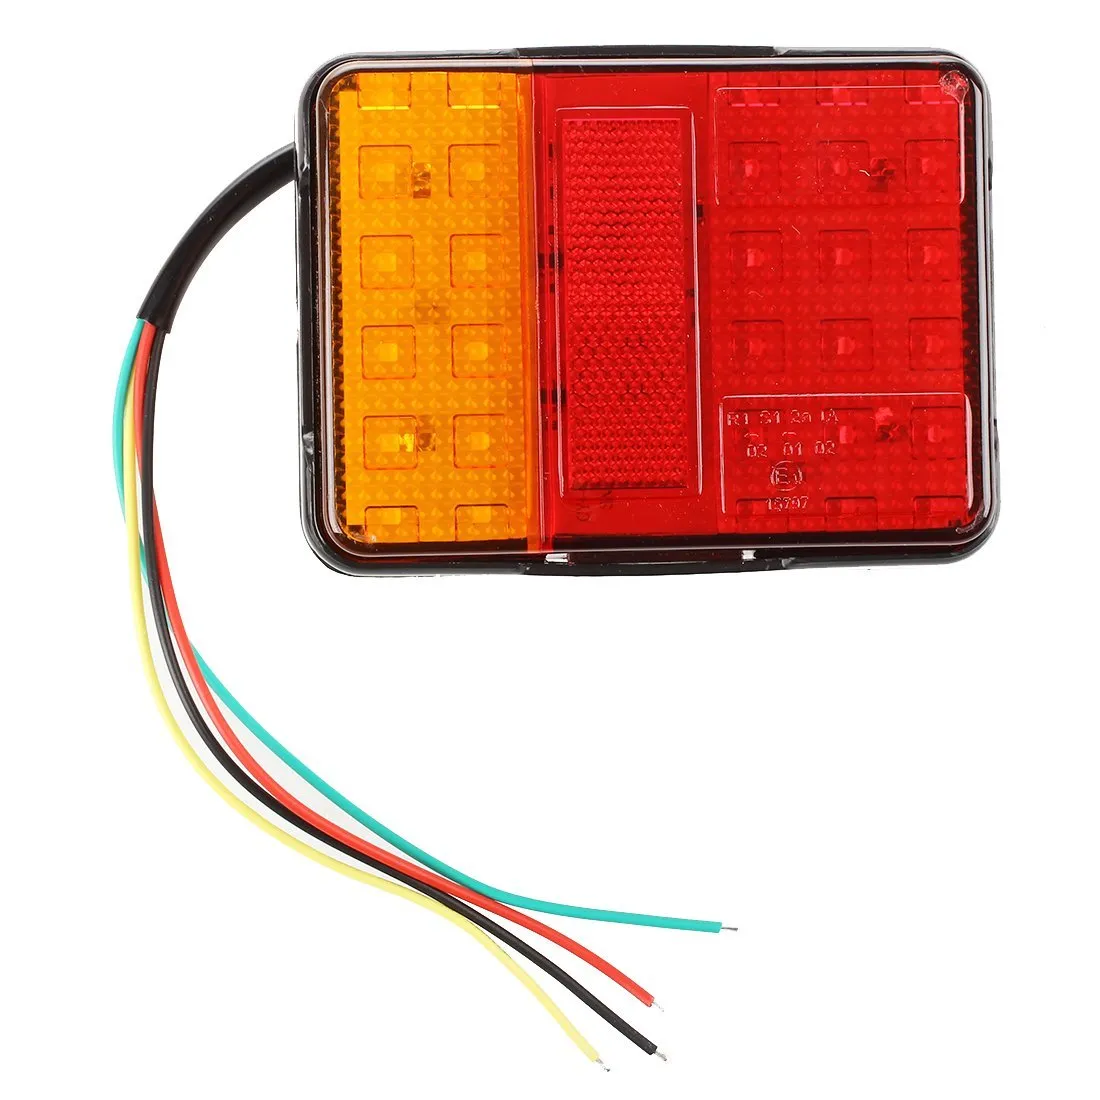 2x 30 LED impermeable 2W luz trasera trasera roja/amarilla para remolque camión barco